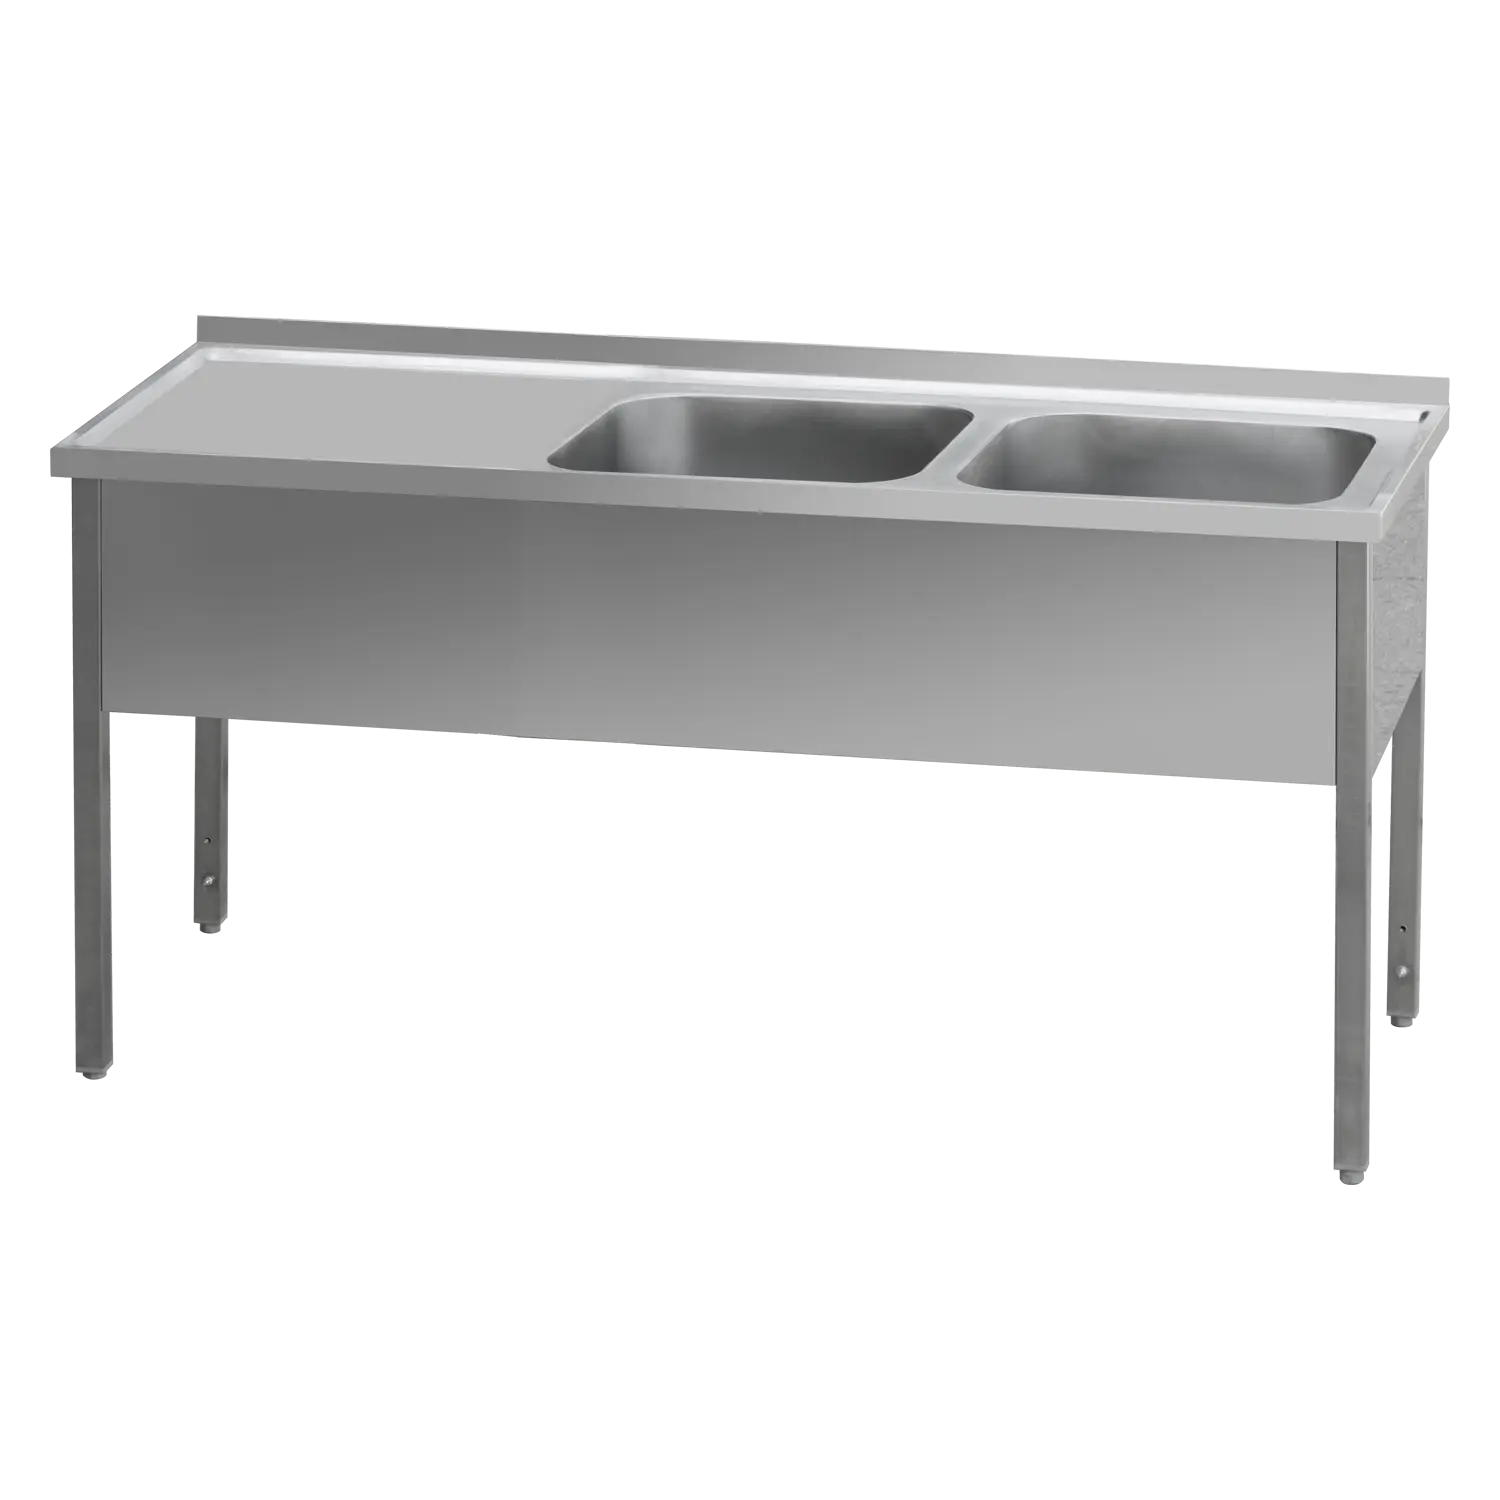 MSDOL 6014 - Stůl mycí 140x60x90 - 2x dřez 40x50x30 odkapávací plocha levá